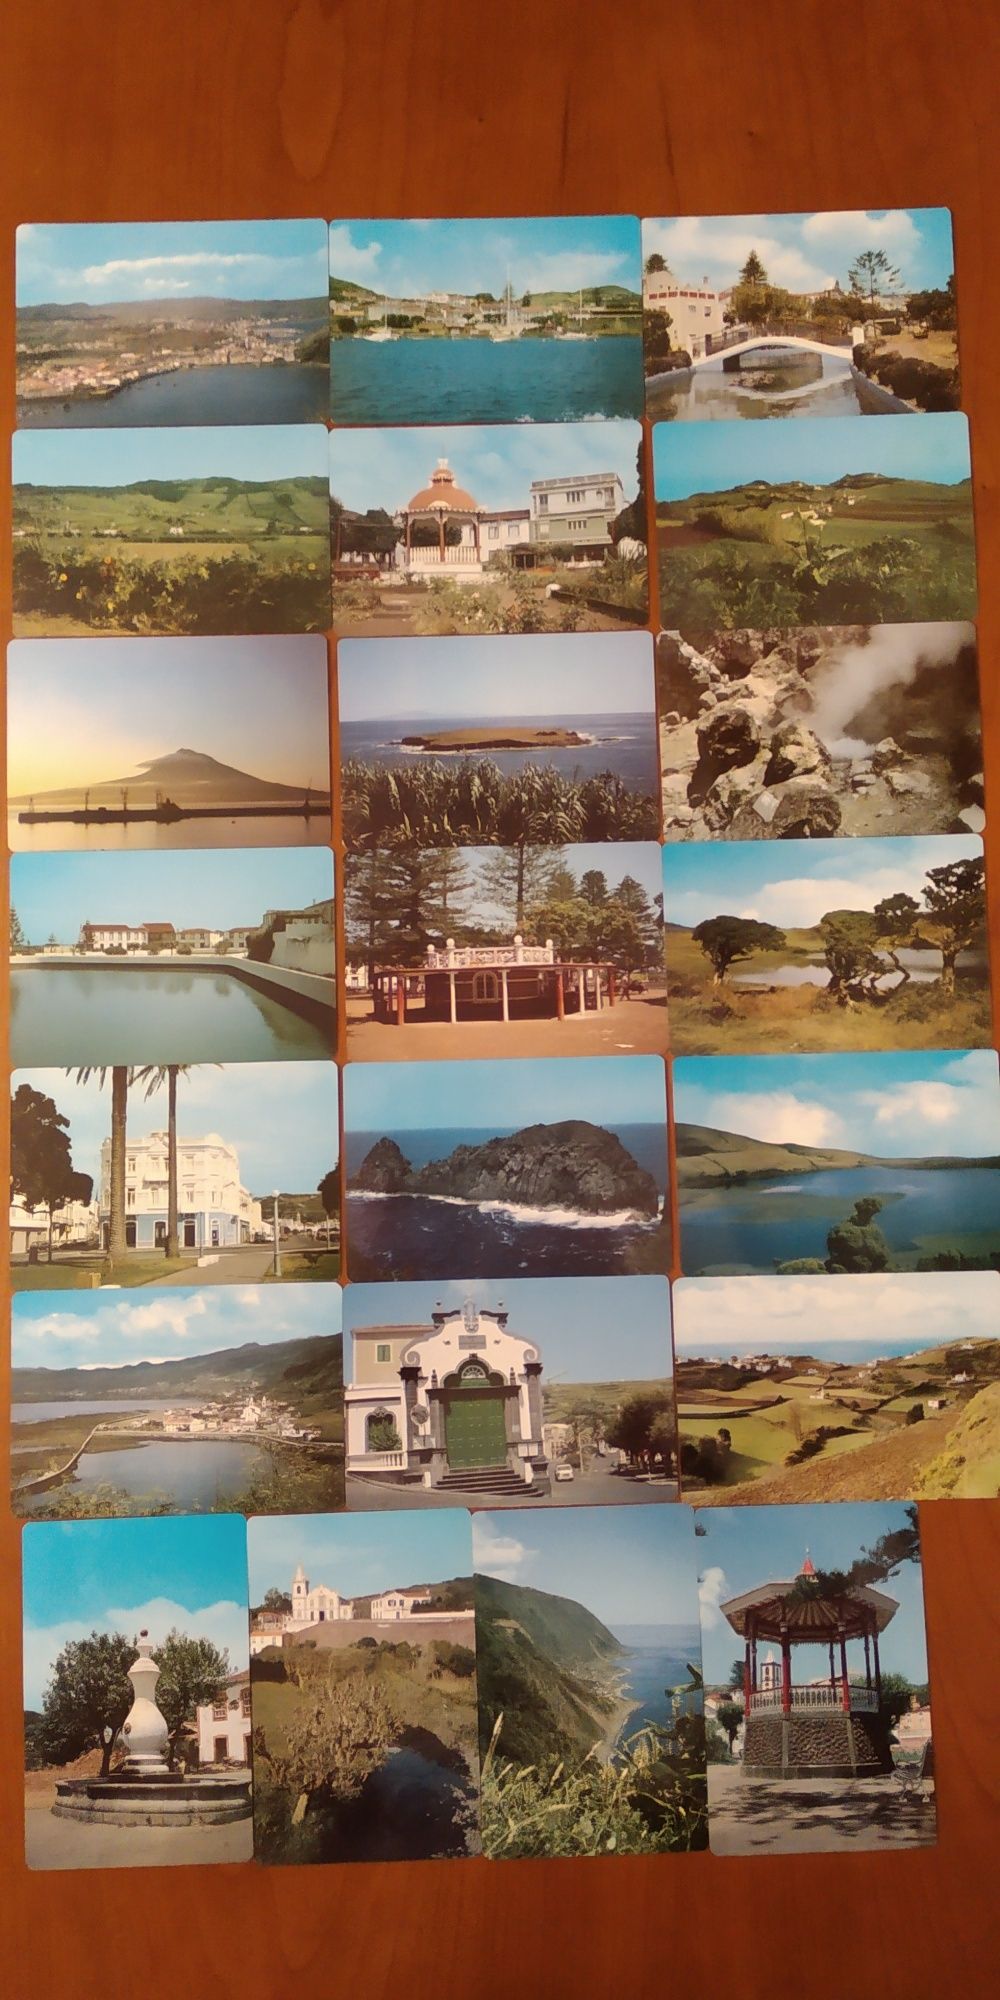 Calendários de paisagens dos Açores